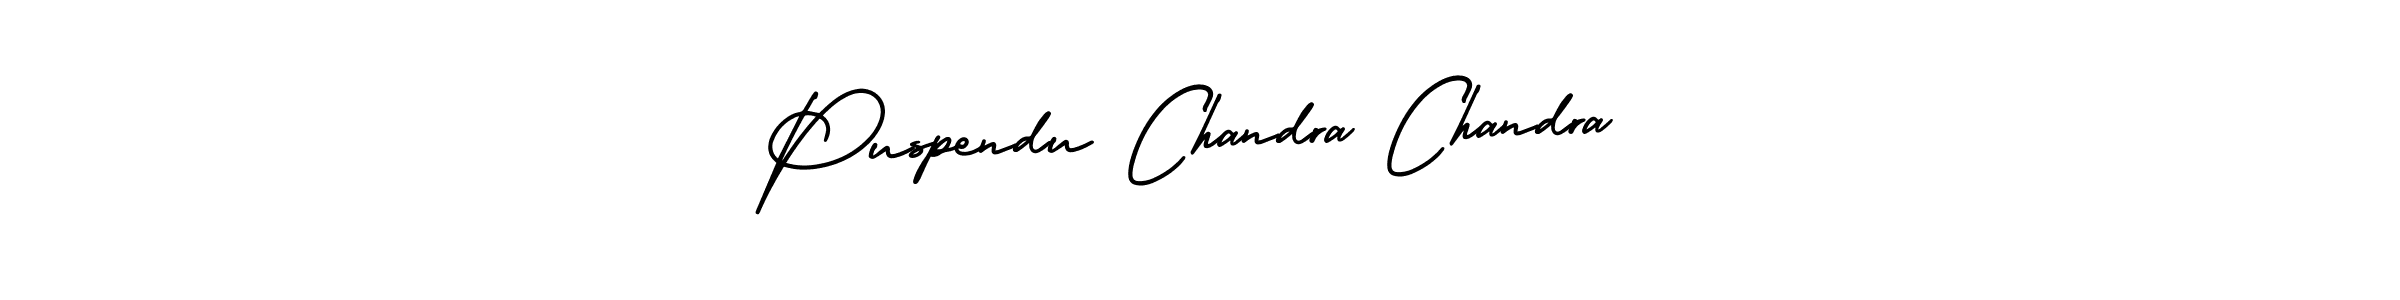 Best and Professional Signature Style for Puspendu Chandra Chandra. AmerikaSignatureDemo-Regular Best Signature Style Collection. Puspendu Chandra Chandra signature style 3 images and pictures png